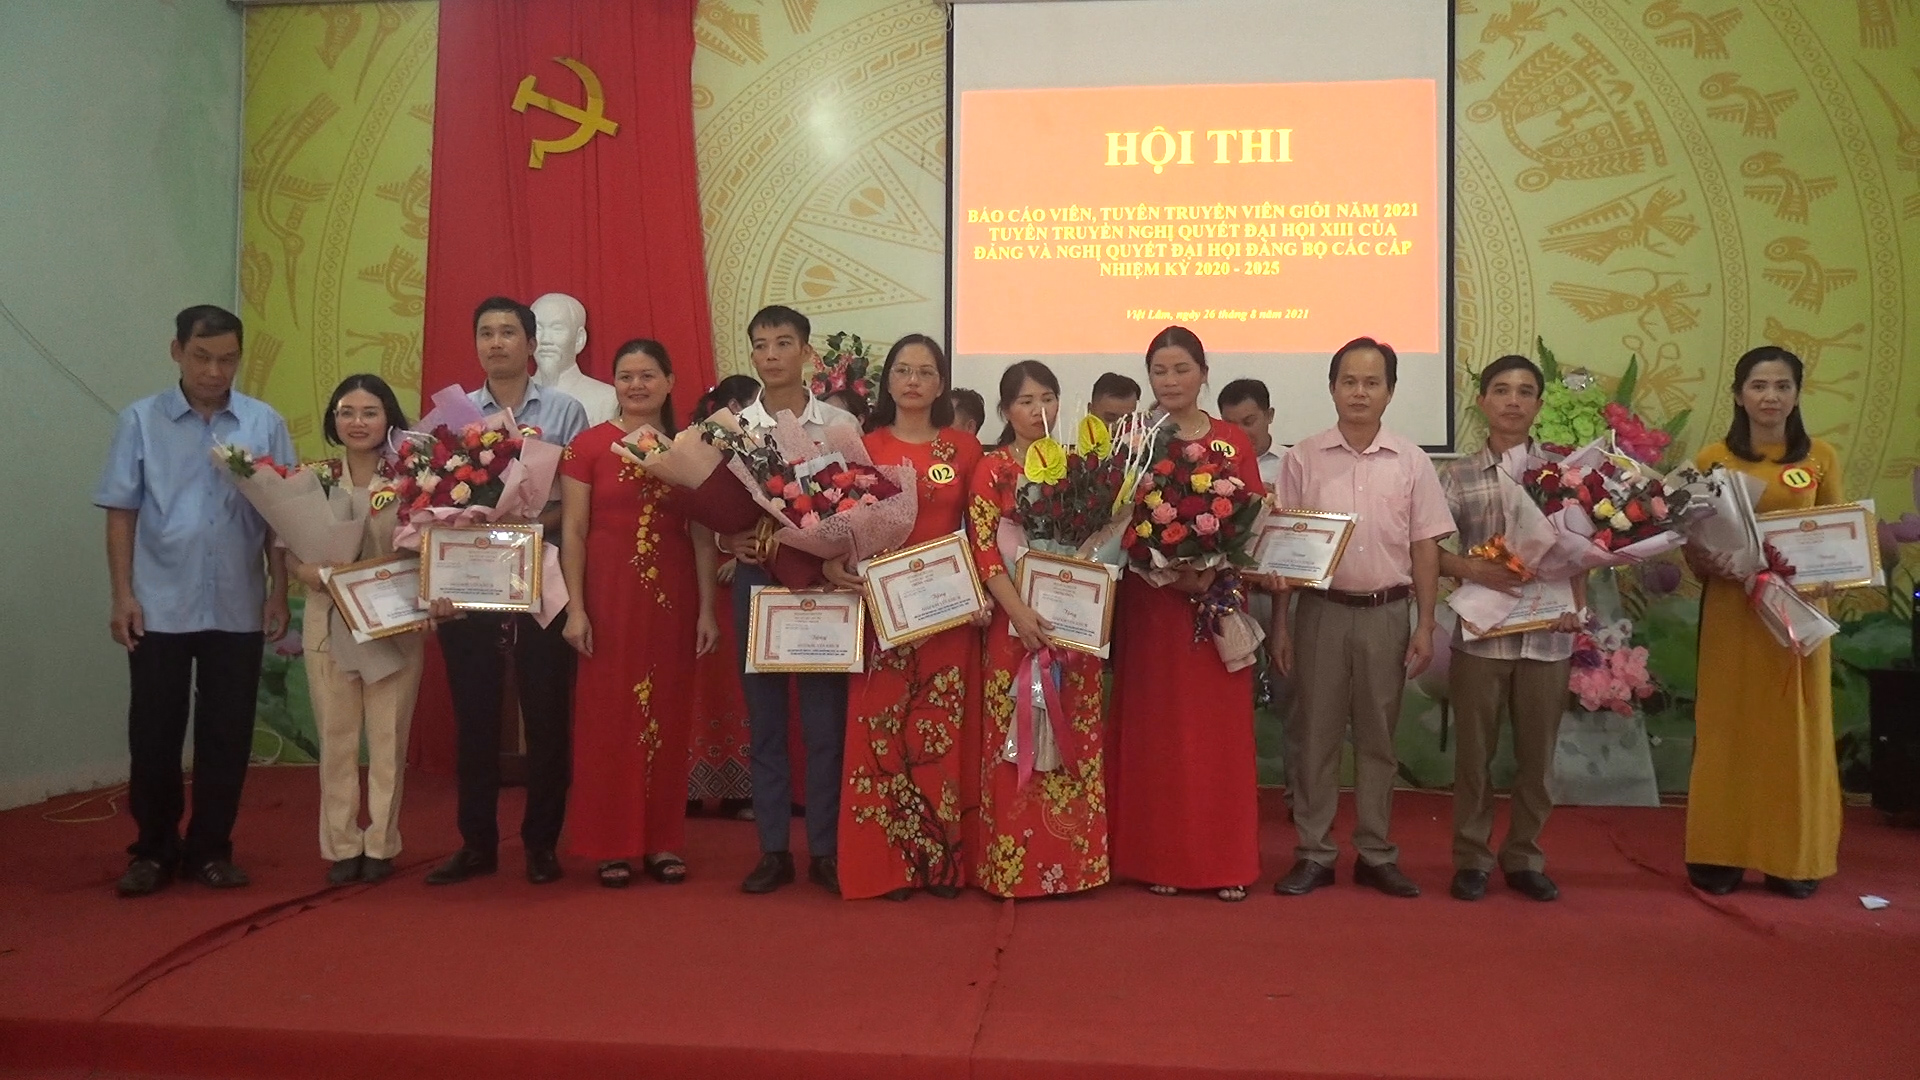 Xã Việt Lâm thi tuyên truyền viên giỏi năm 2021